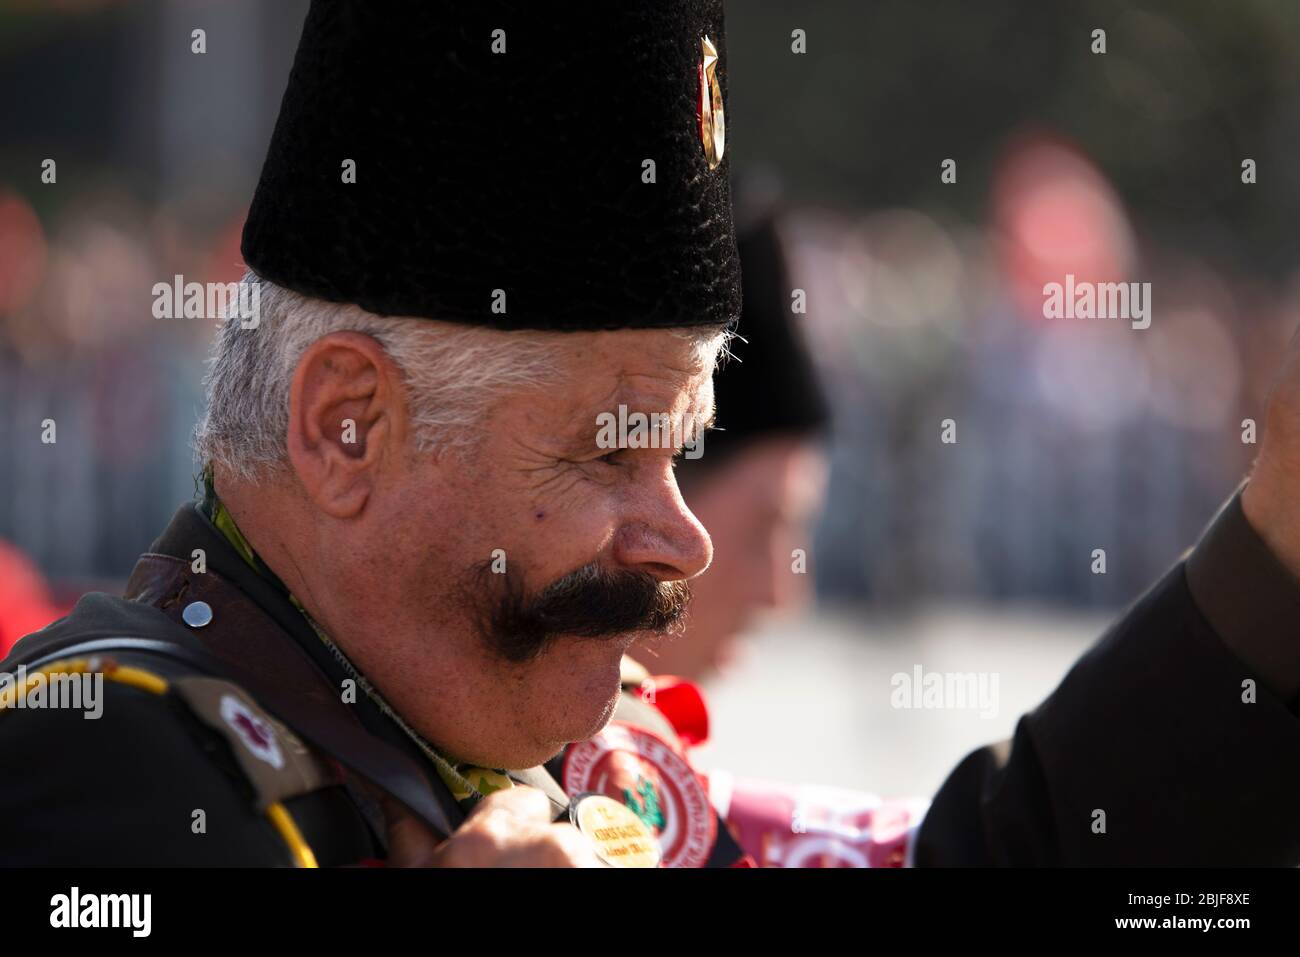 Izmir, Türkei - 29. Oktober 2019: Porträt von Celal Dolasir, dem Kriegsveteranen, mit seiner Uniform und seiner Frau. Er hat einen schönen und maskulinen Schnurrbart. O Stockfoto